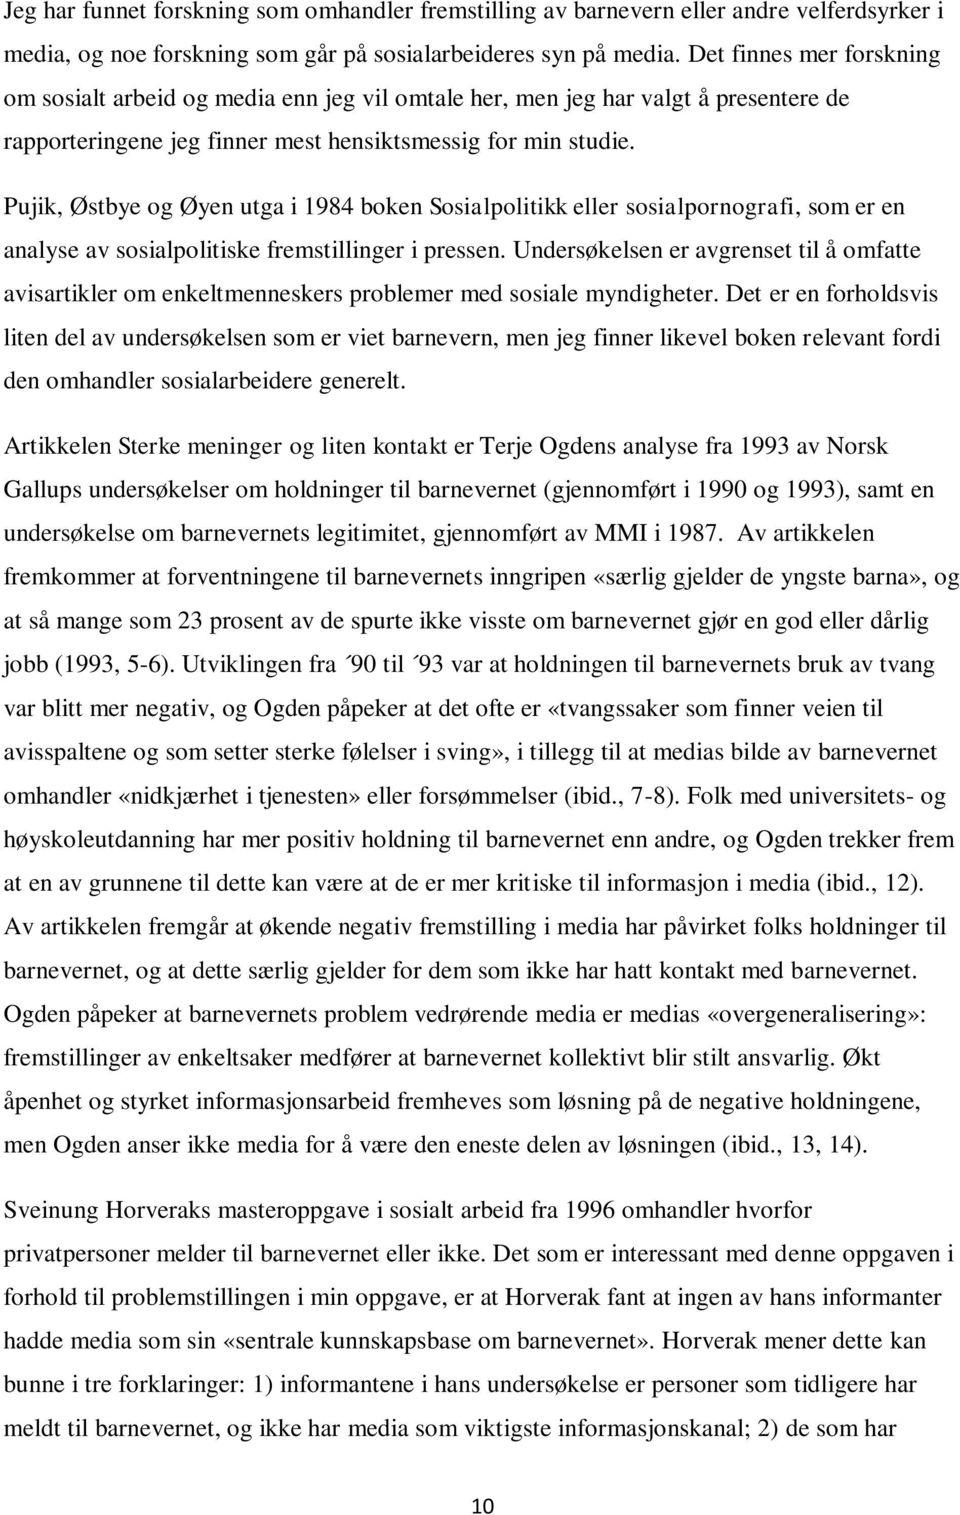 Pujik, Østbye og Øyen utga i 1984 boken Sosialpolitikk eller sosialpornografi, som er en analyse av sosialpolitiske fremstillinger i pressen.